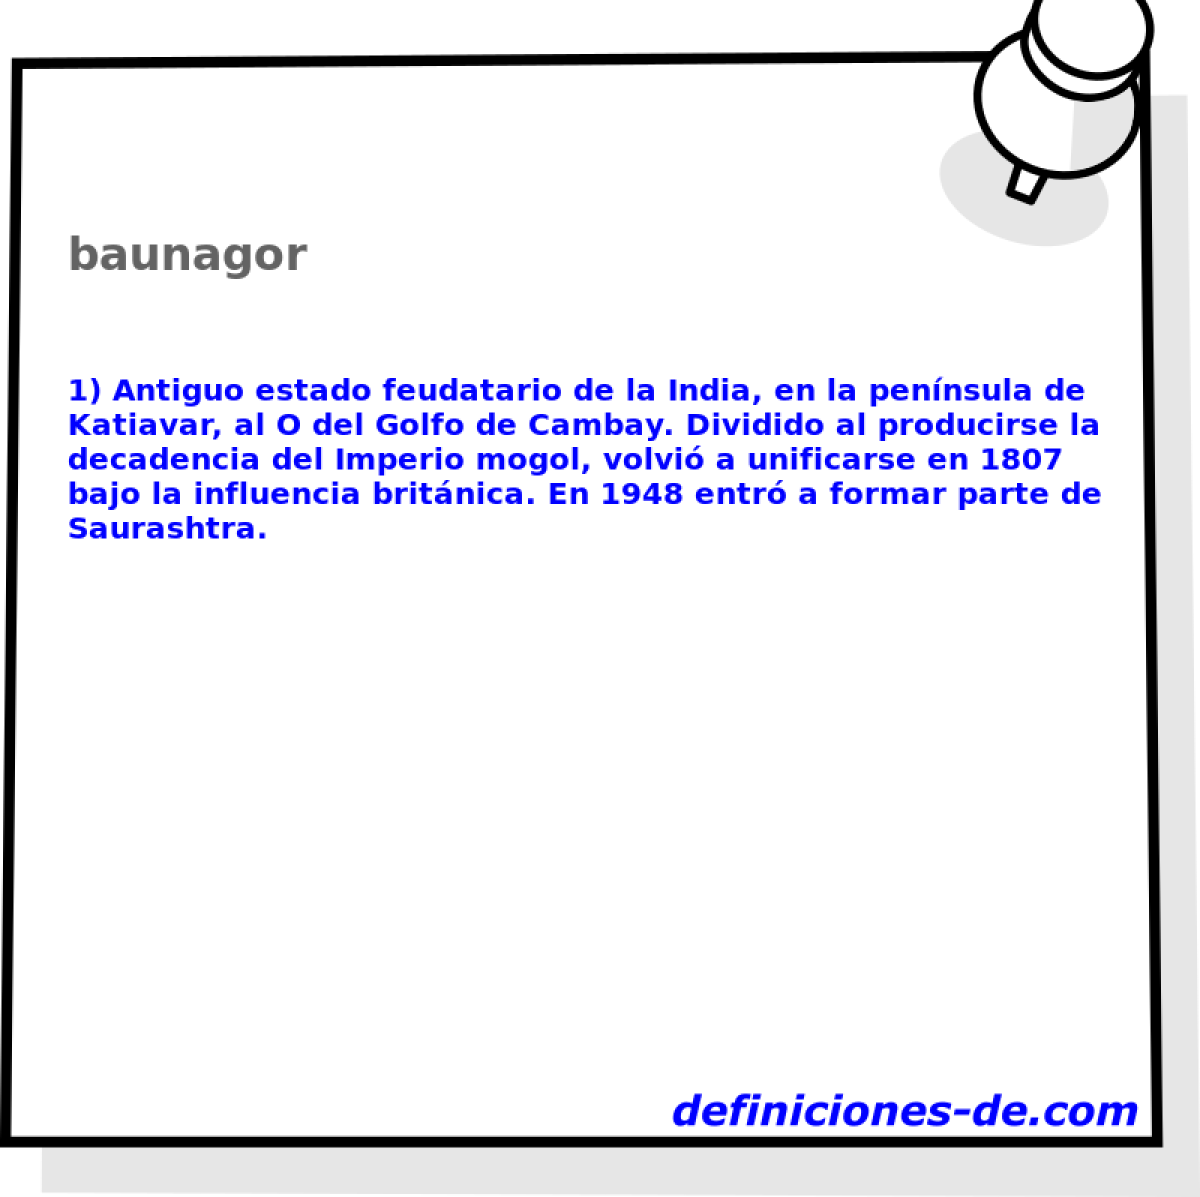 baunagor 